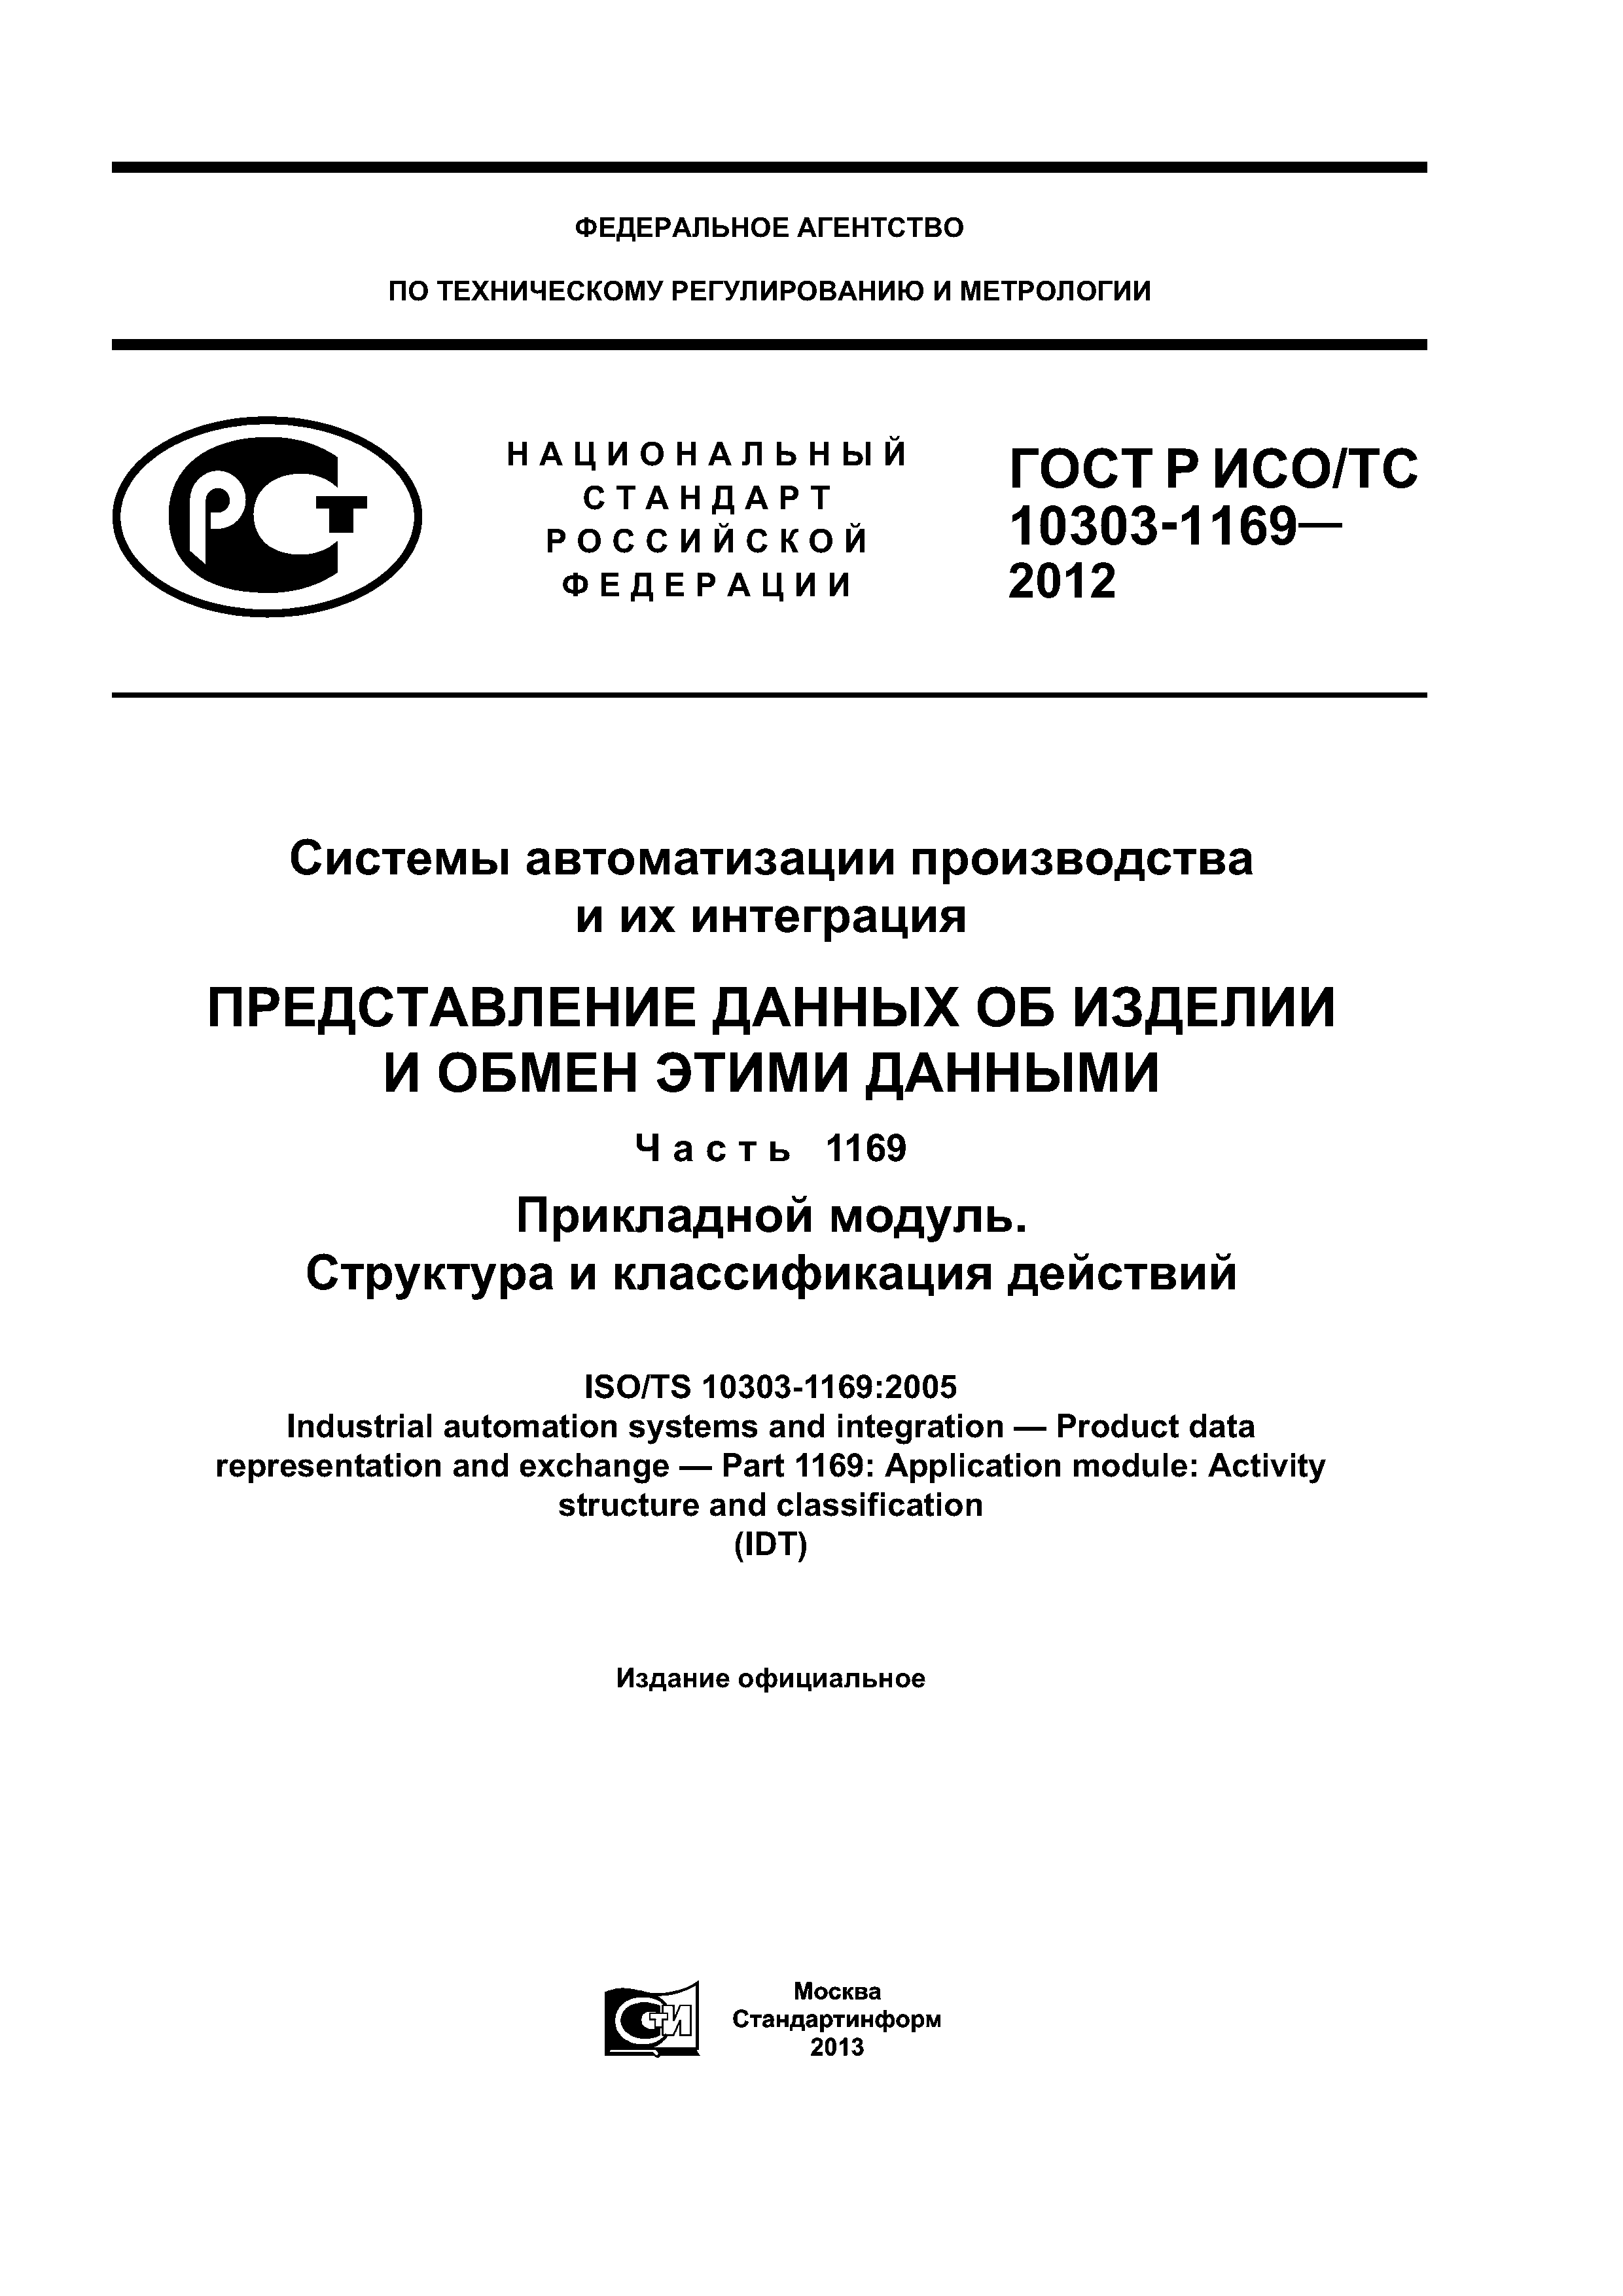 ГОСТ Р ИСО/ТС 10303-1169-2012